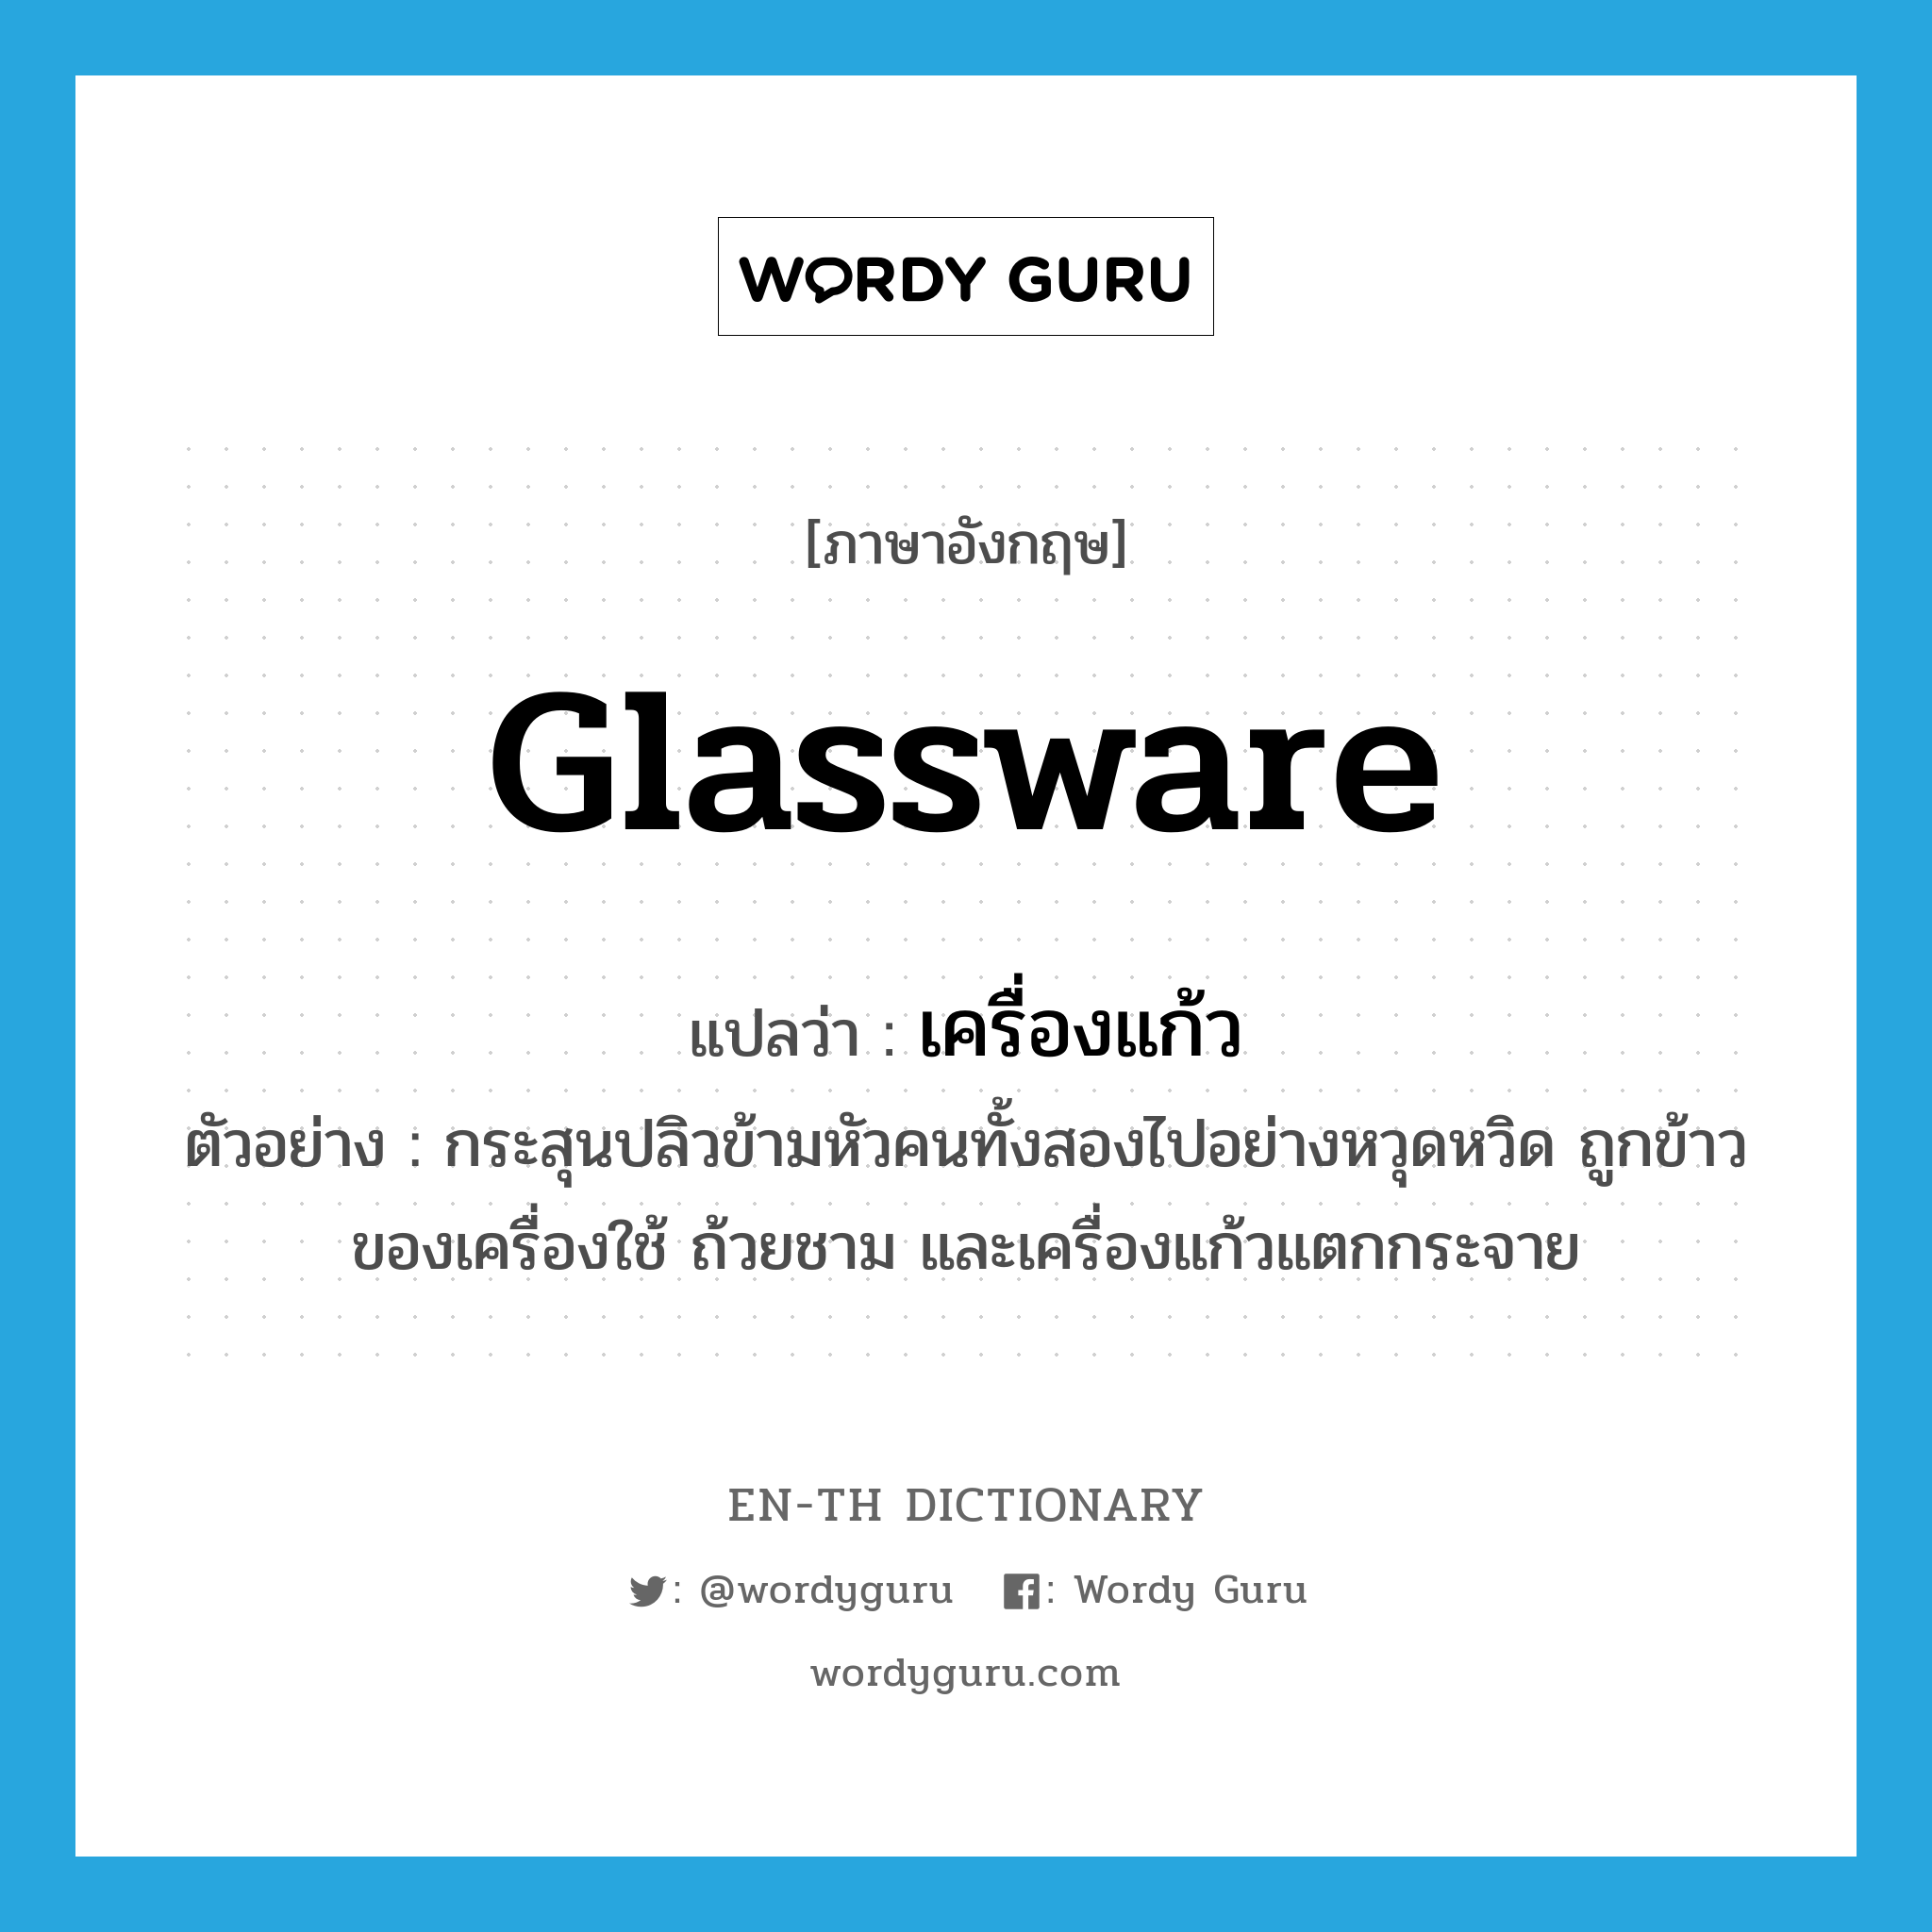 glassware แปลว่า?, คำศัพท์ภาษาอังกฤษ glassware แปลว่า เครื่องแก้ว ประเภท N ตัวอย่าง กระสุนปลิวข้ามหัวคนทั้งสองไปอย่างหวุดหวิด ถูกข้าวของเครื่องใช้ ถ้วยชาม และเครื่องแก้วแตกกระจาย หมวด N